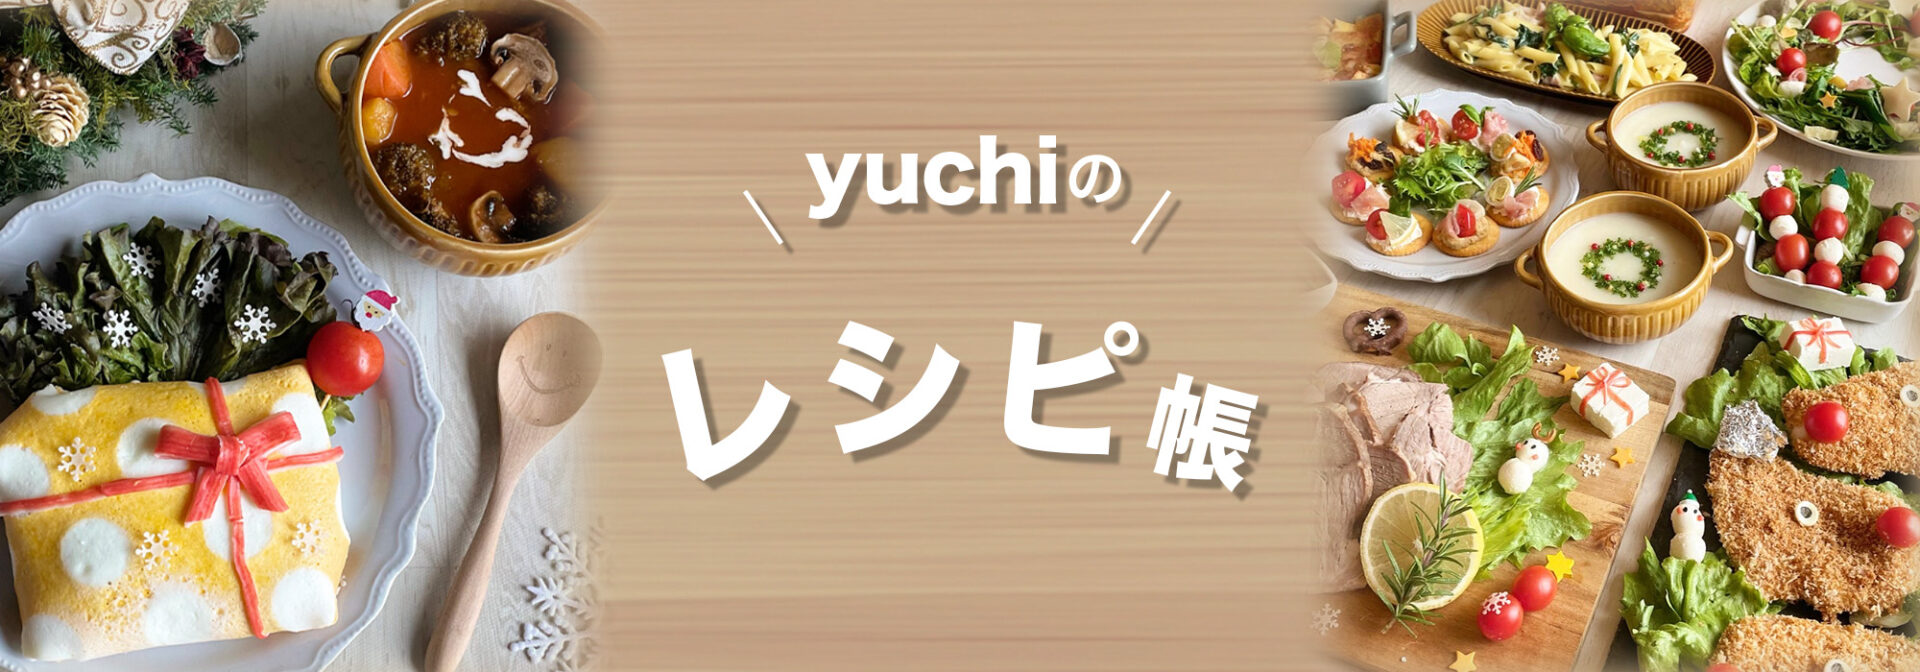 yuchiのレシピ帳